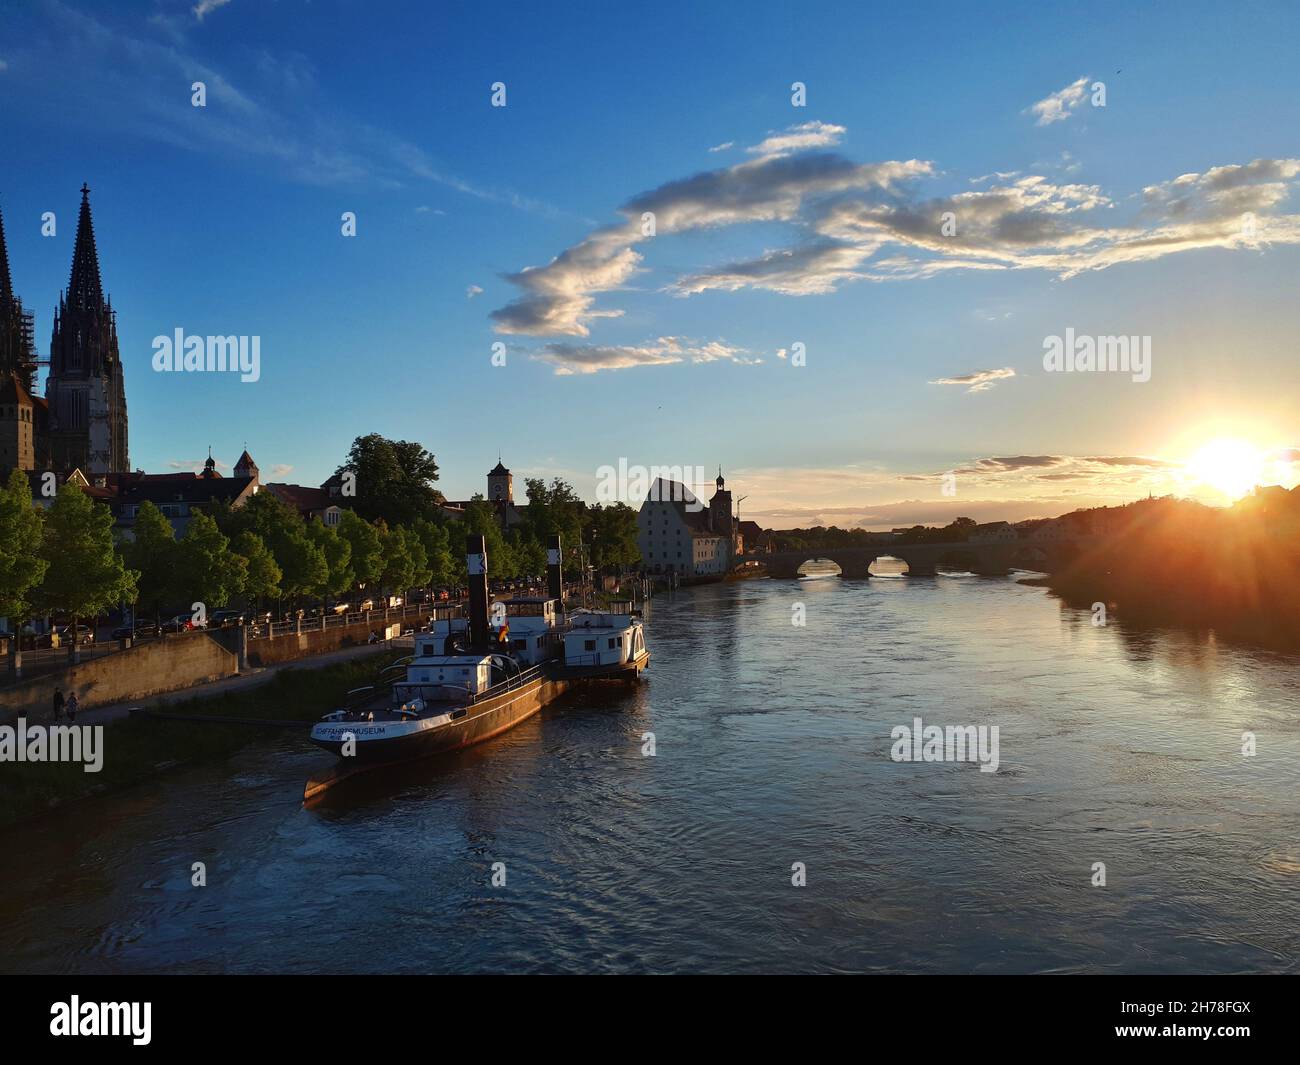 Regensburg, Alemania: Horizonte durante la puesta del sol Foto de stock